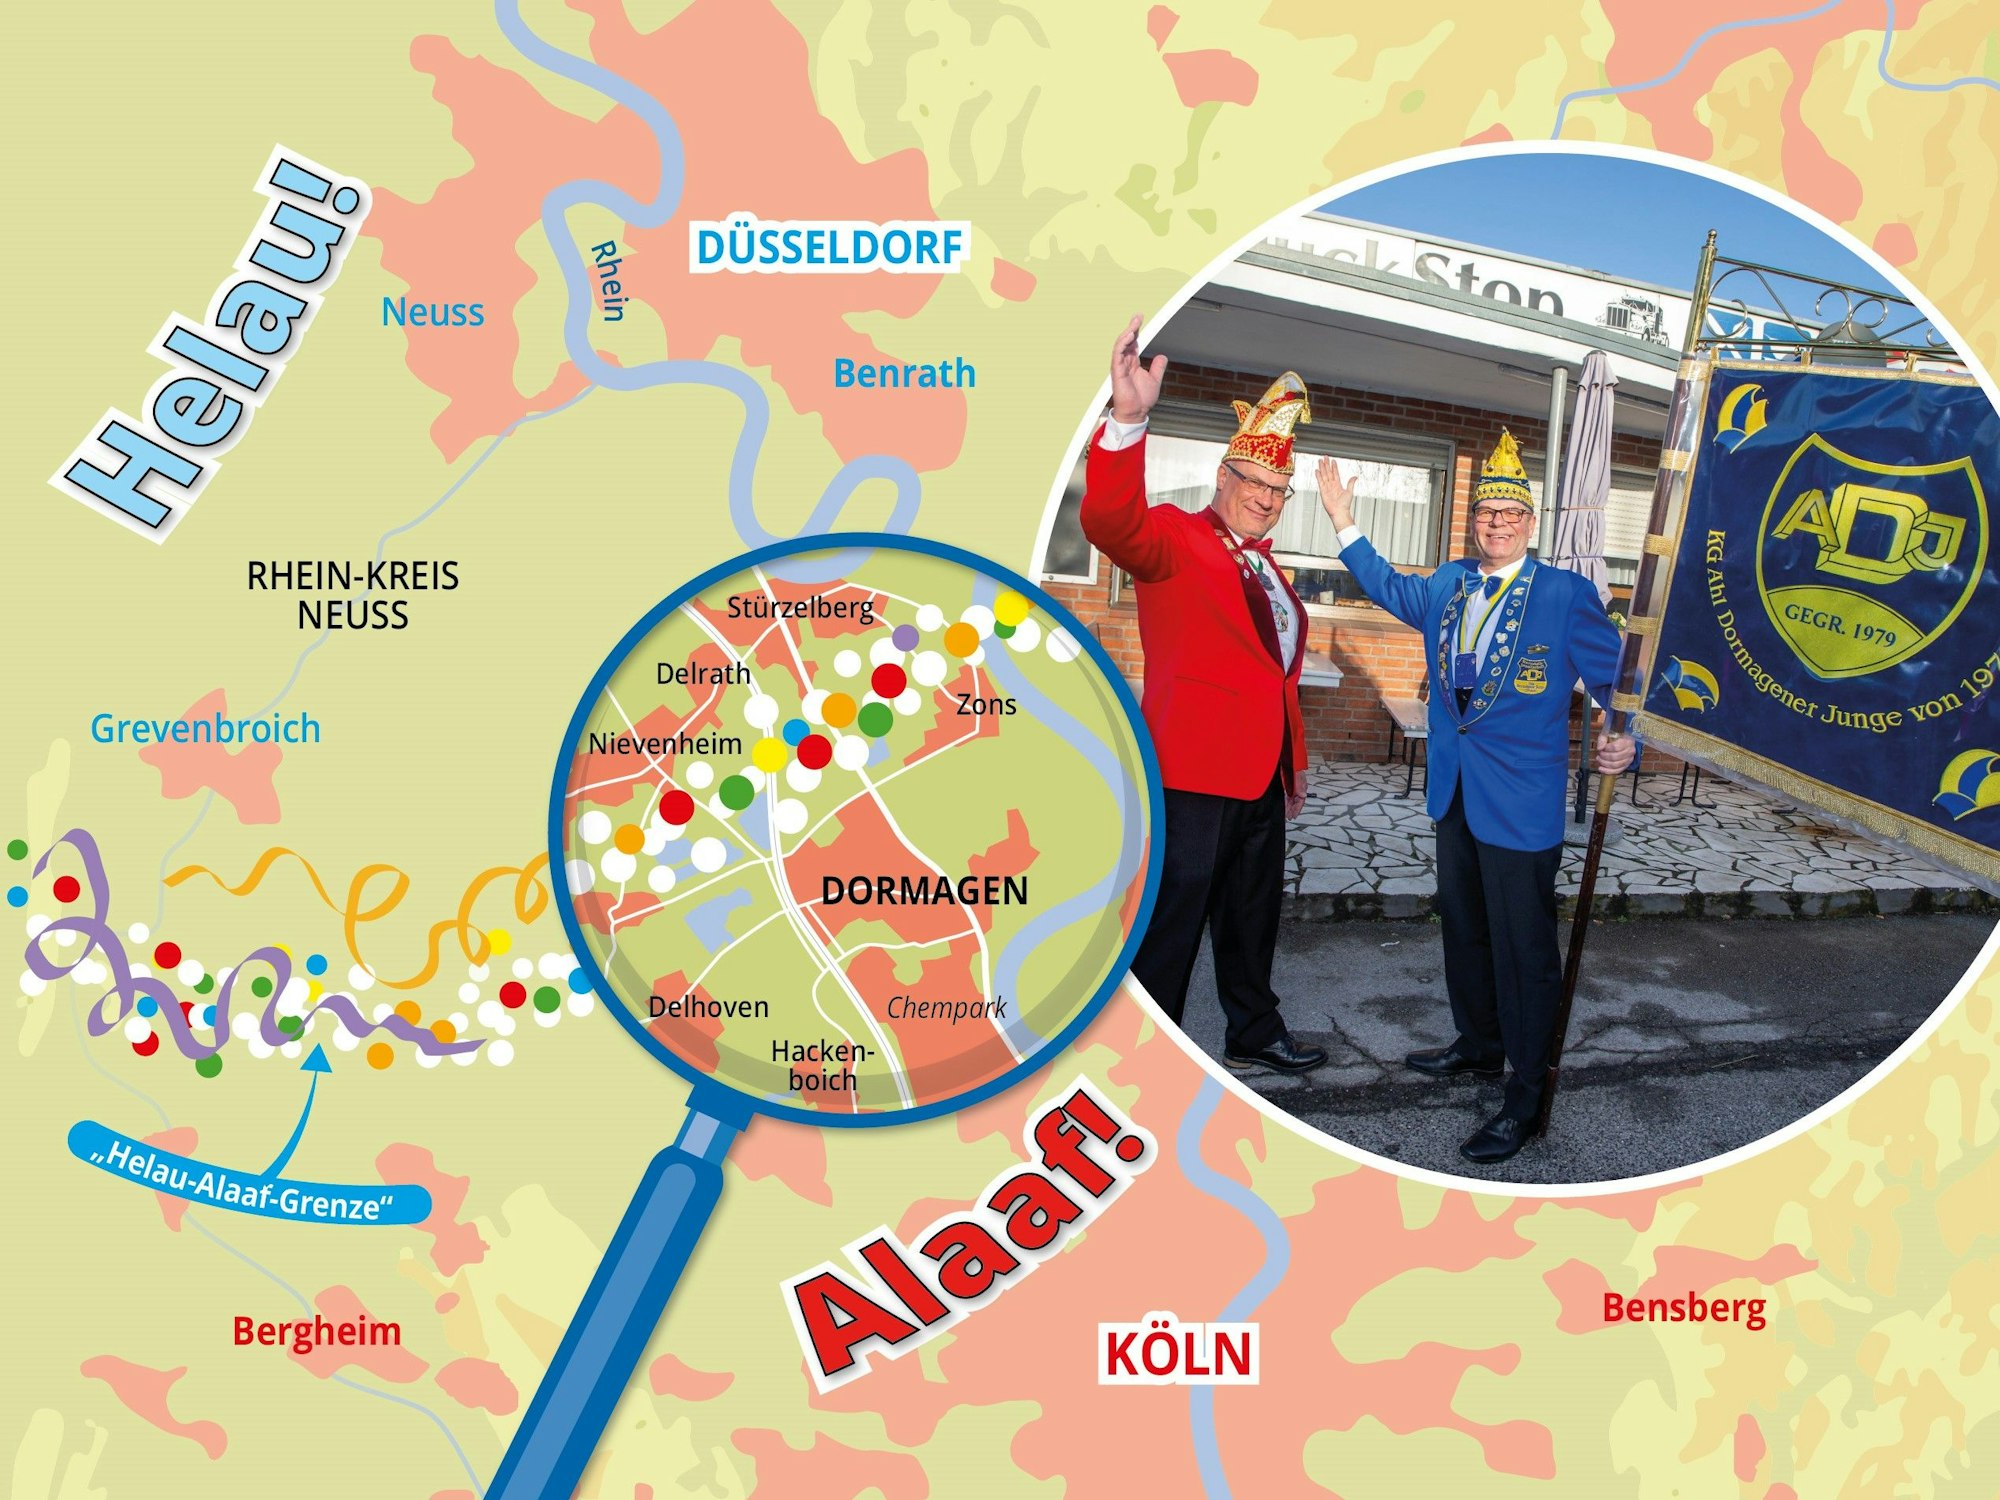 Markus Fillinger (l.) und Jens Wagner (r.), Präsidenten von Karnevalsgesellschaften aus Dormagen, das mitten auf der Helau-Alaaf-Grenze im Rheinland liegt.